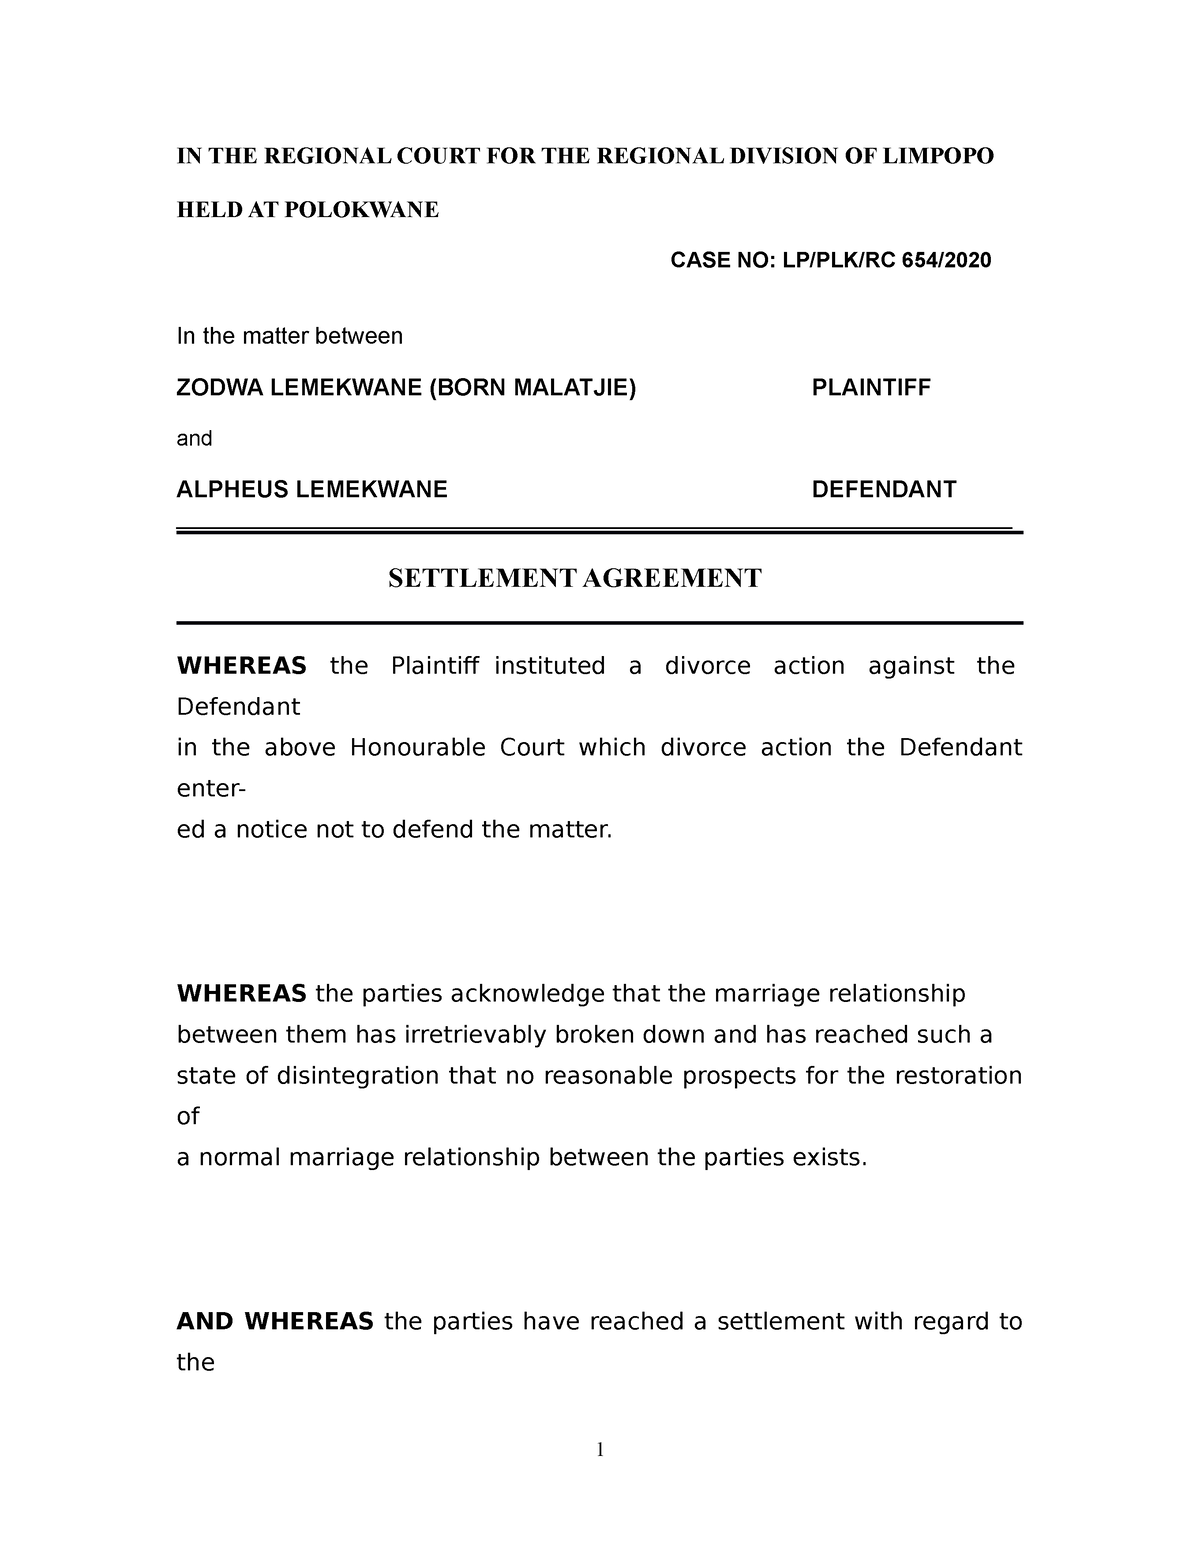 Settlement Agreement Sample IN THE REGIONAL COURT FOR THE REGIONAL